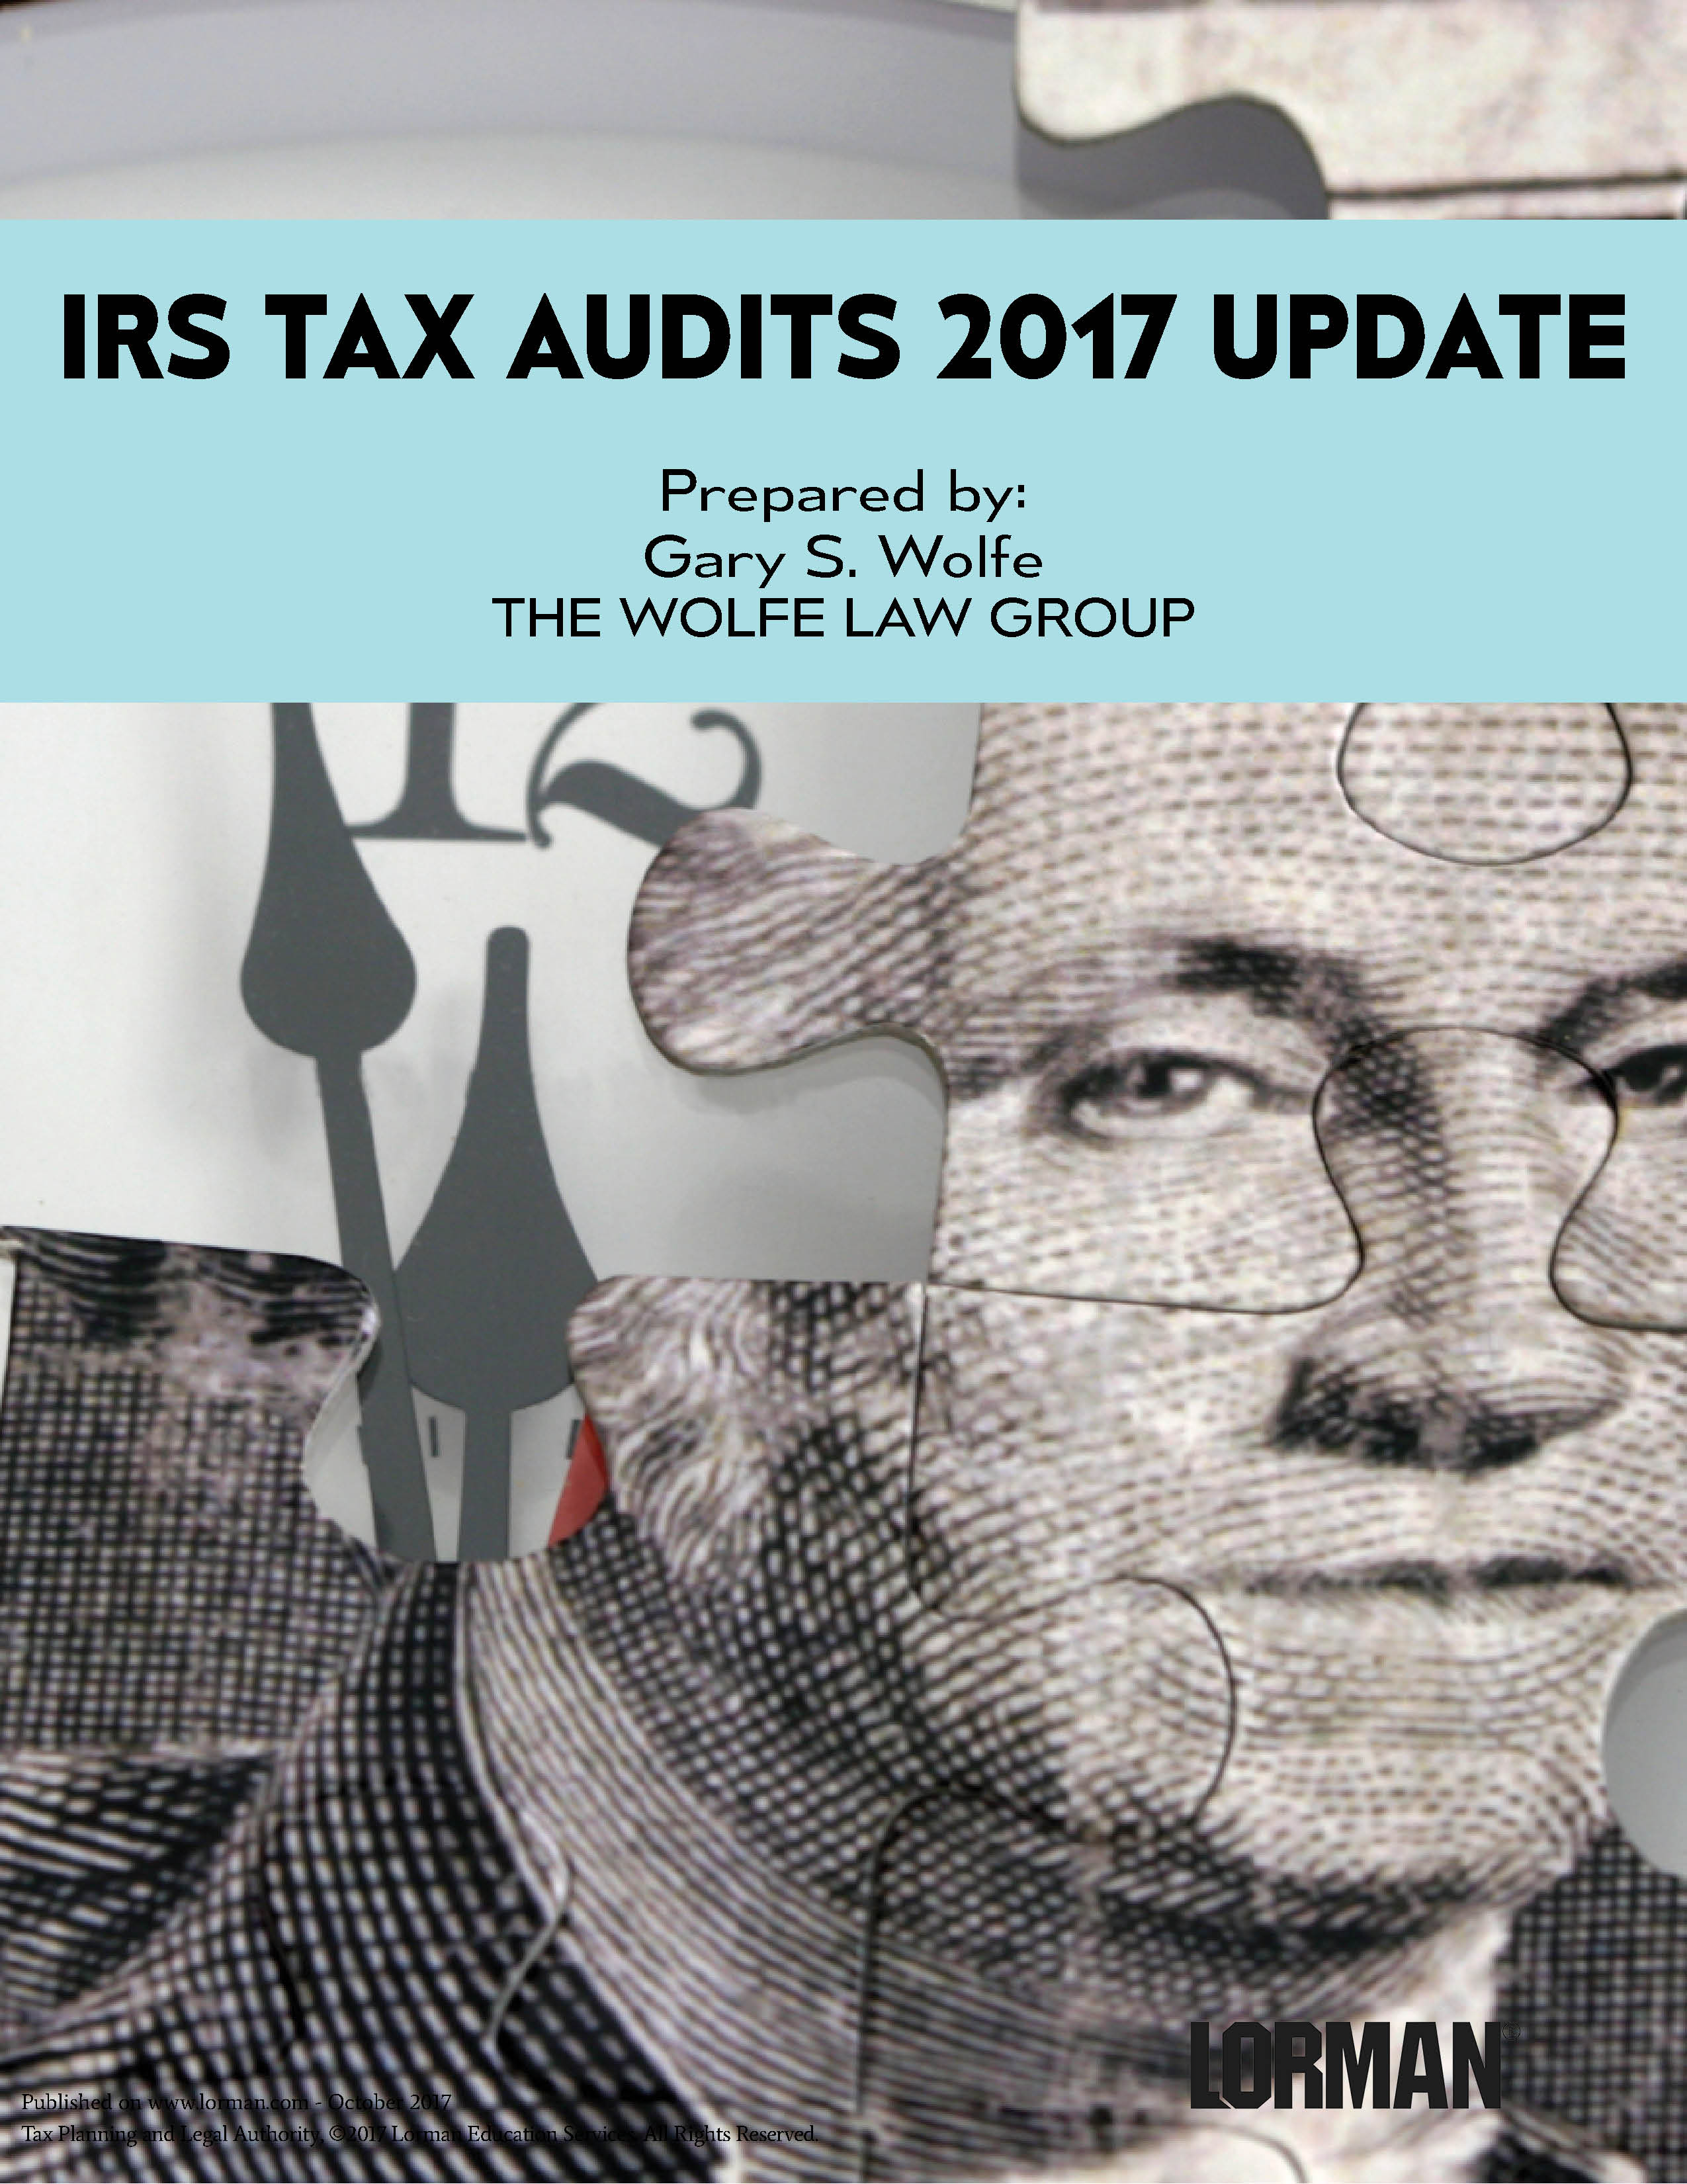 IRS Tax Audits 2017 Update